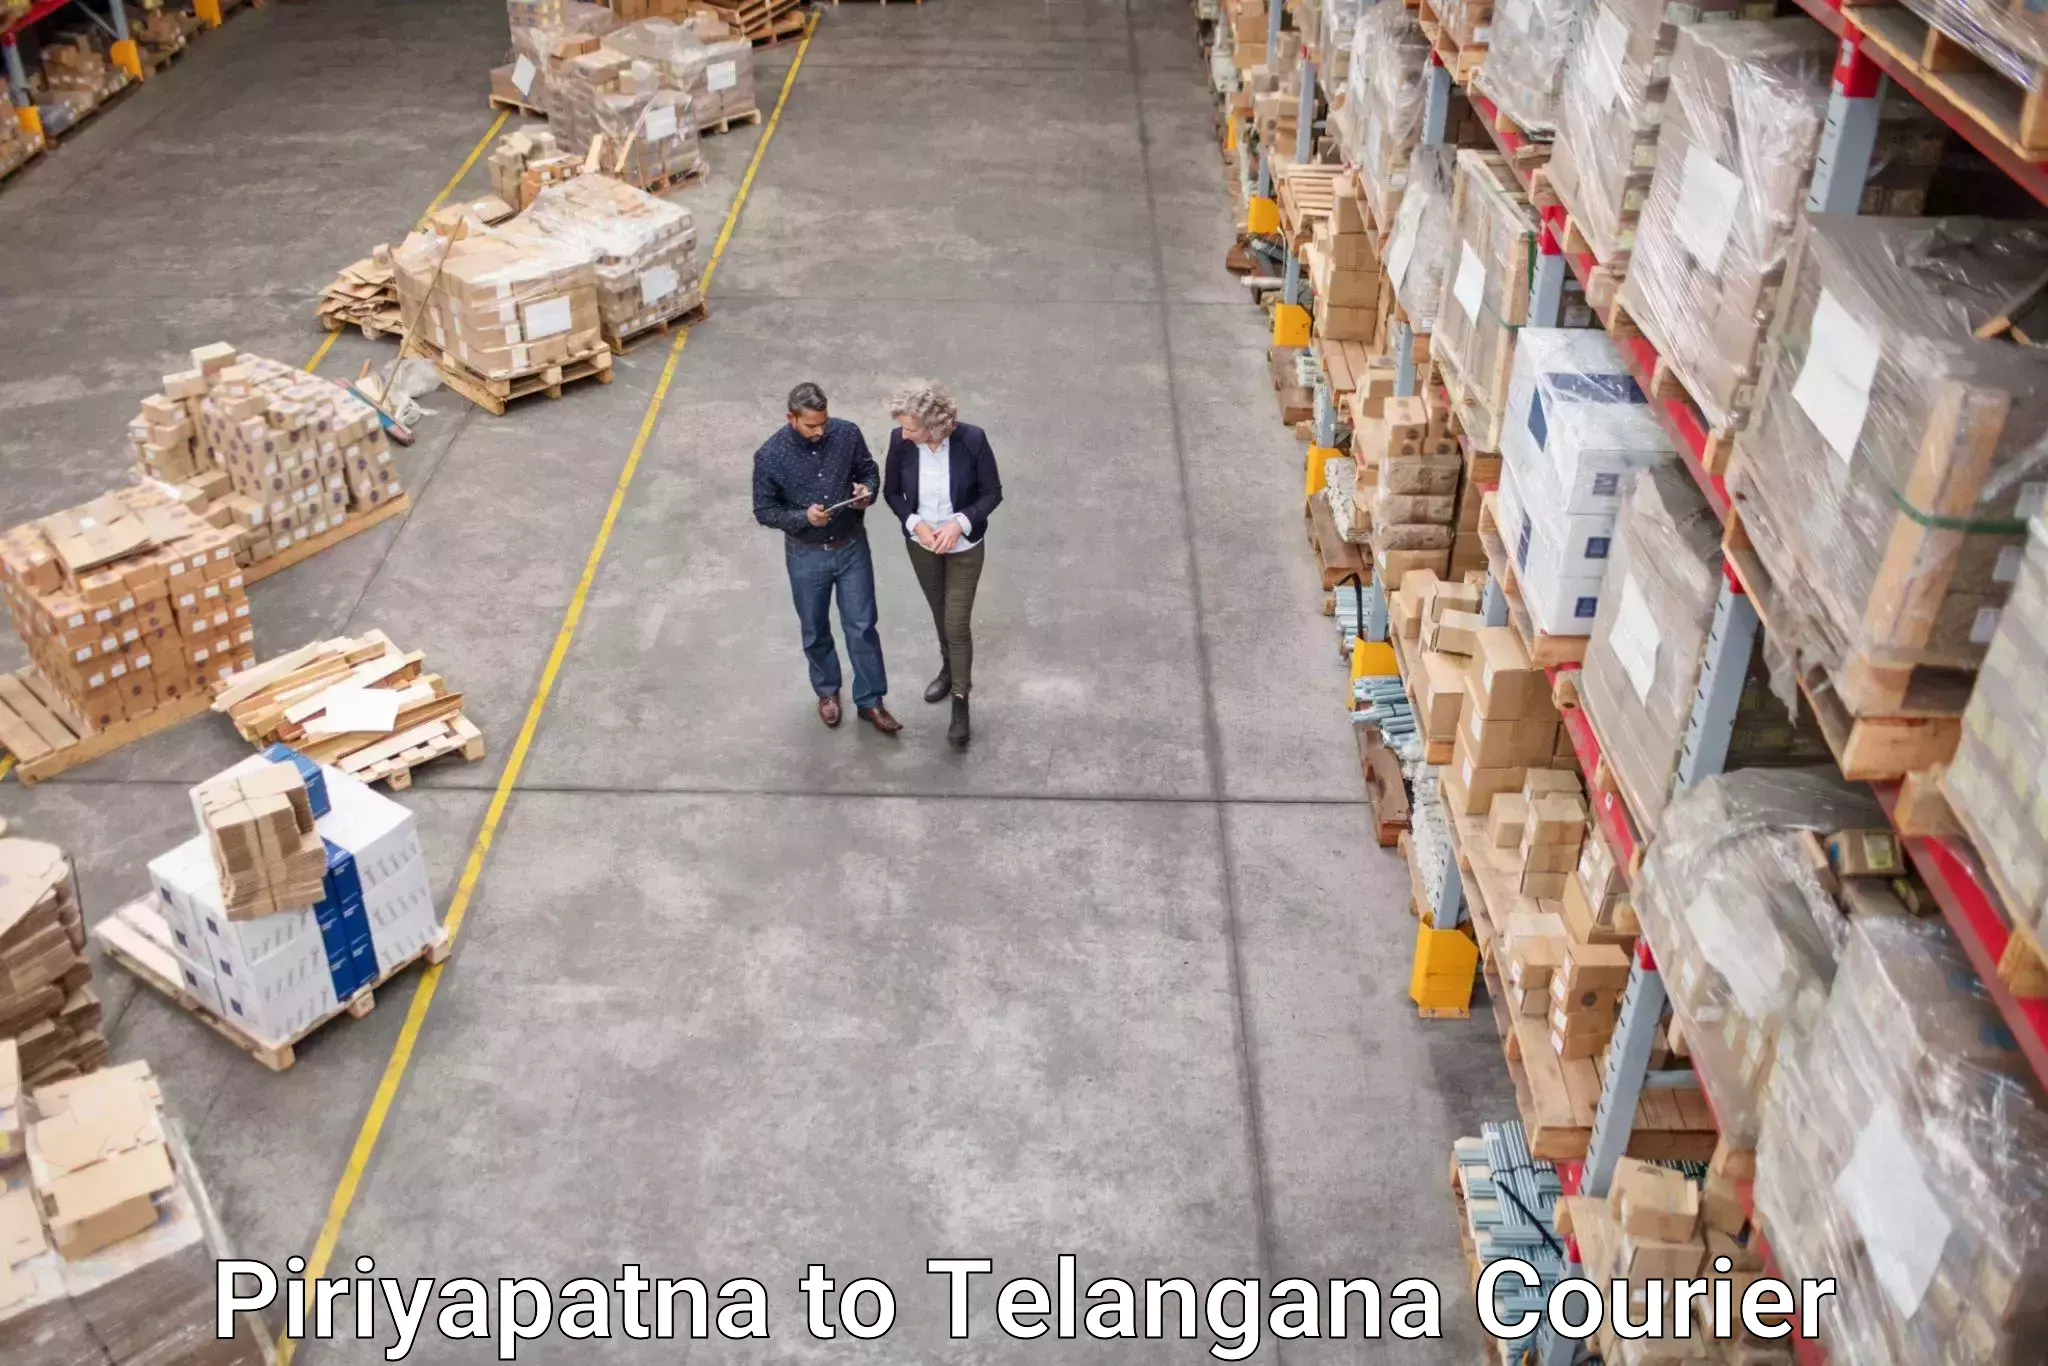 Next-day delivery options Piriyapatna to Chegunta